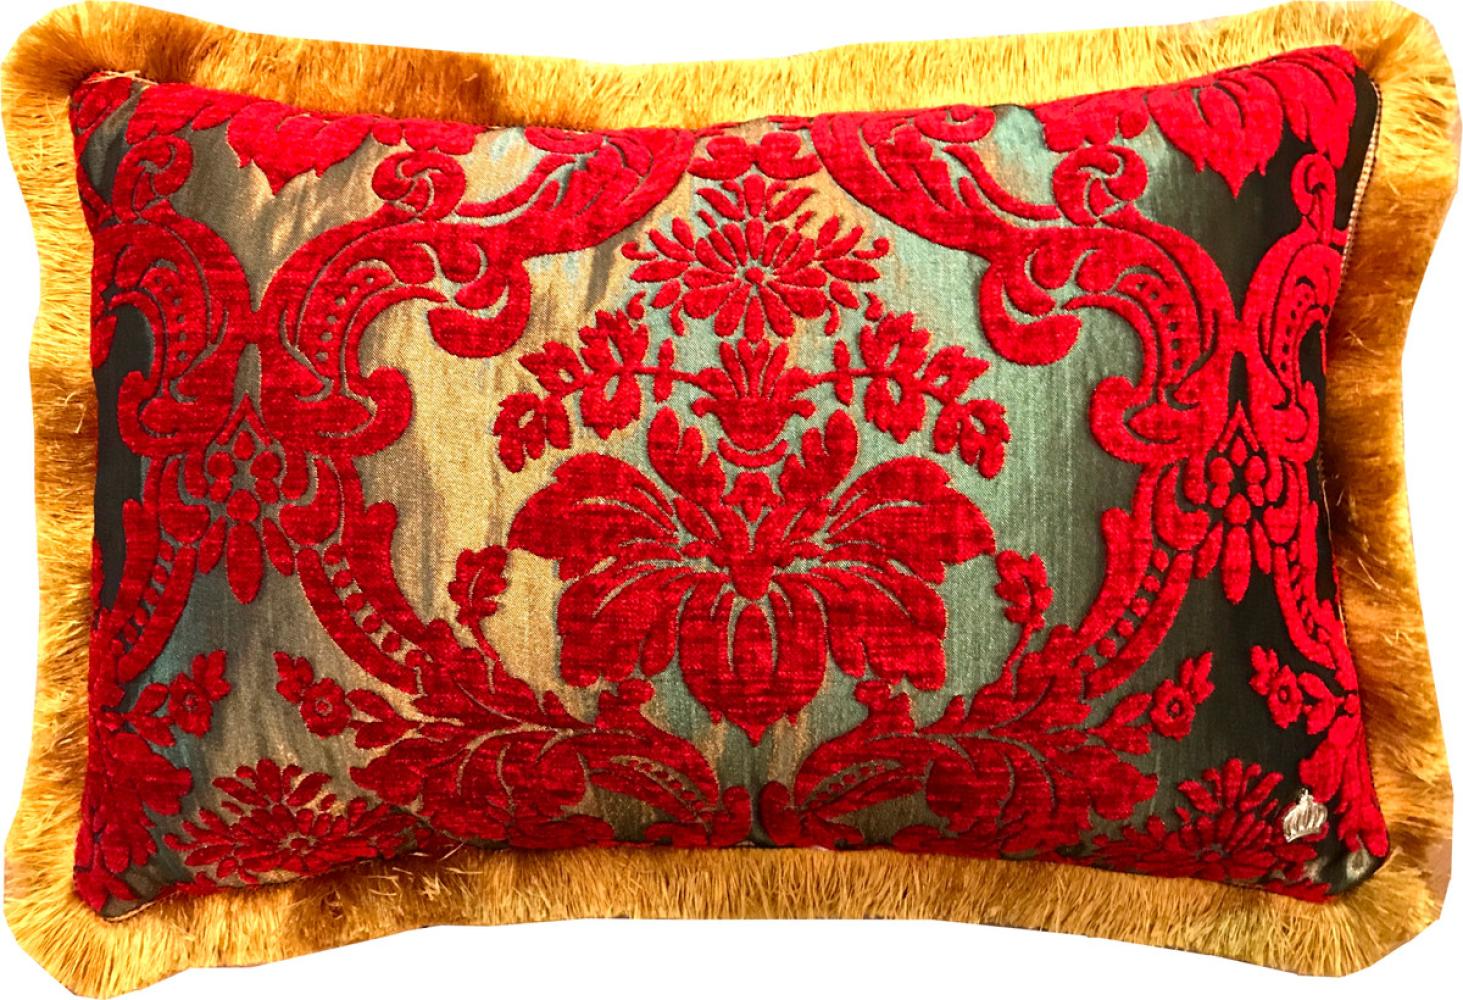 Luxus Kissen Pompöös by Casa Padrino von Harald Glööckler Elegance Collection Barock Muster Rot / Gold 35 x 55 cm - Luxuskissen Bild 1